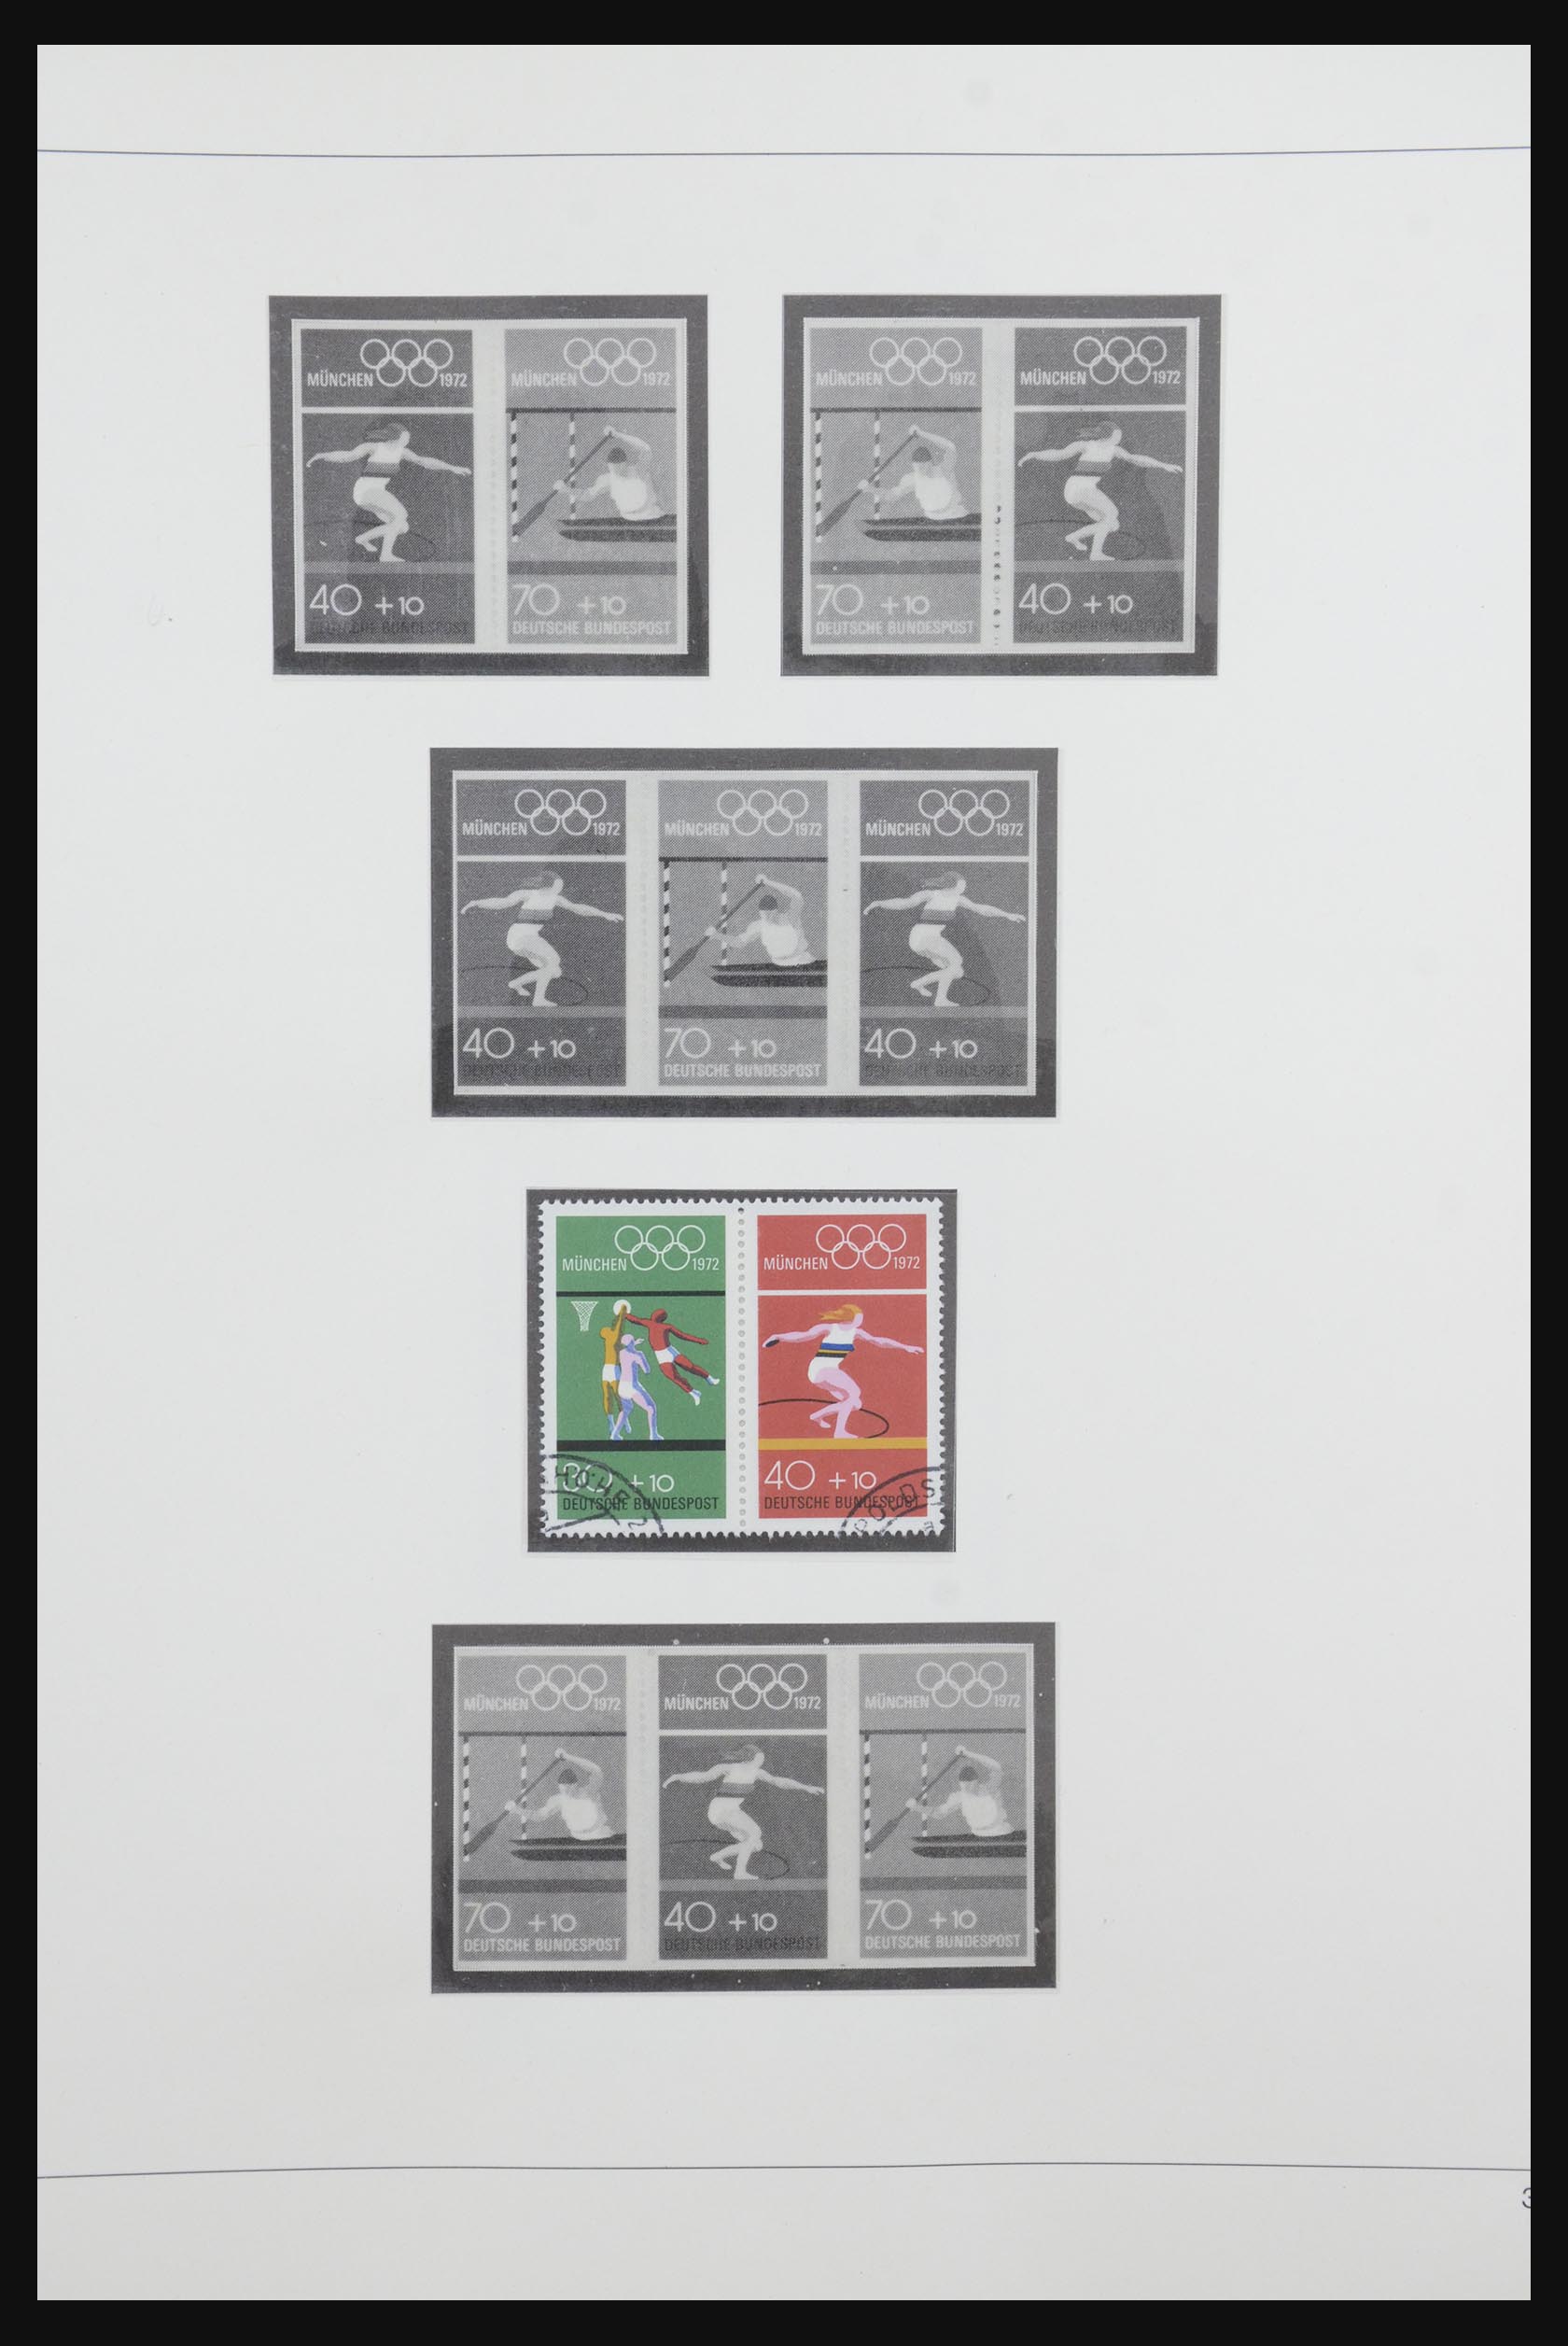 31842 044 - 31842 Bundespost combinaties 1951-2003.